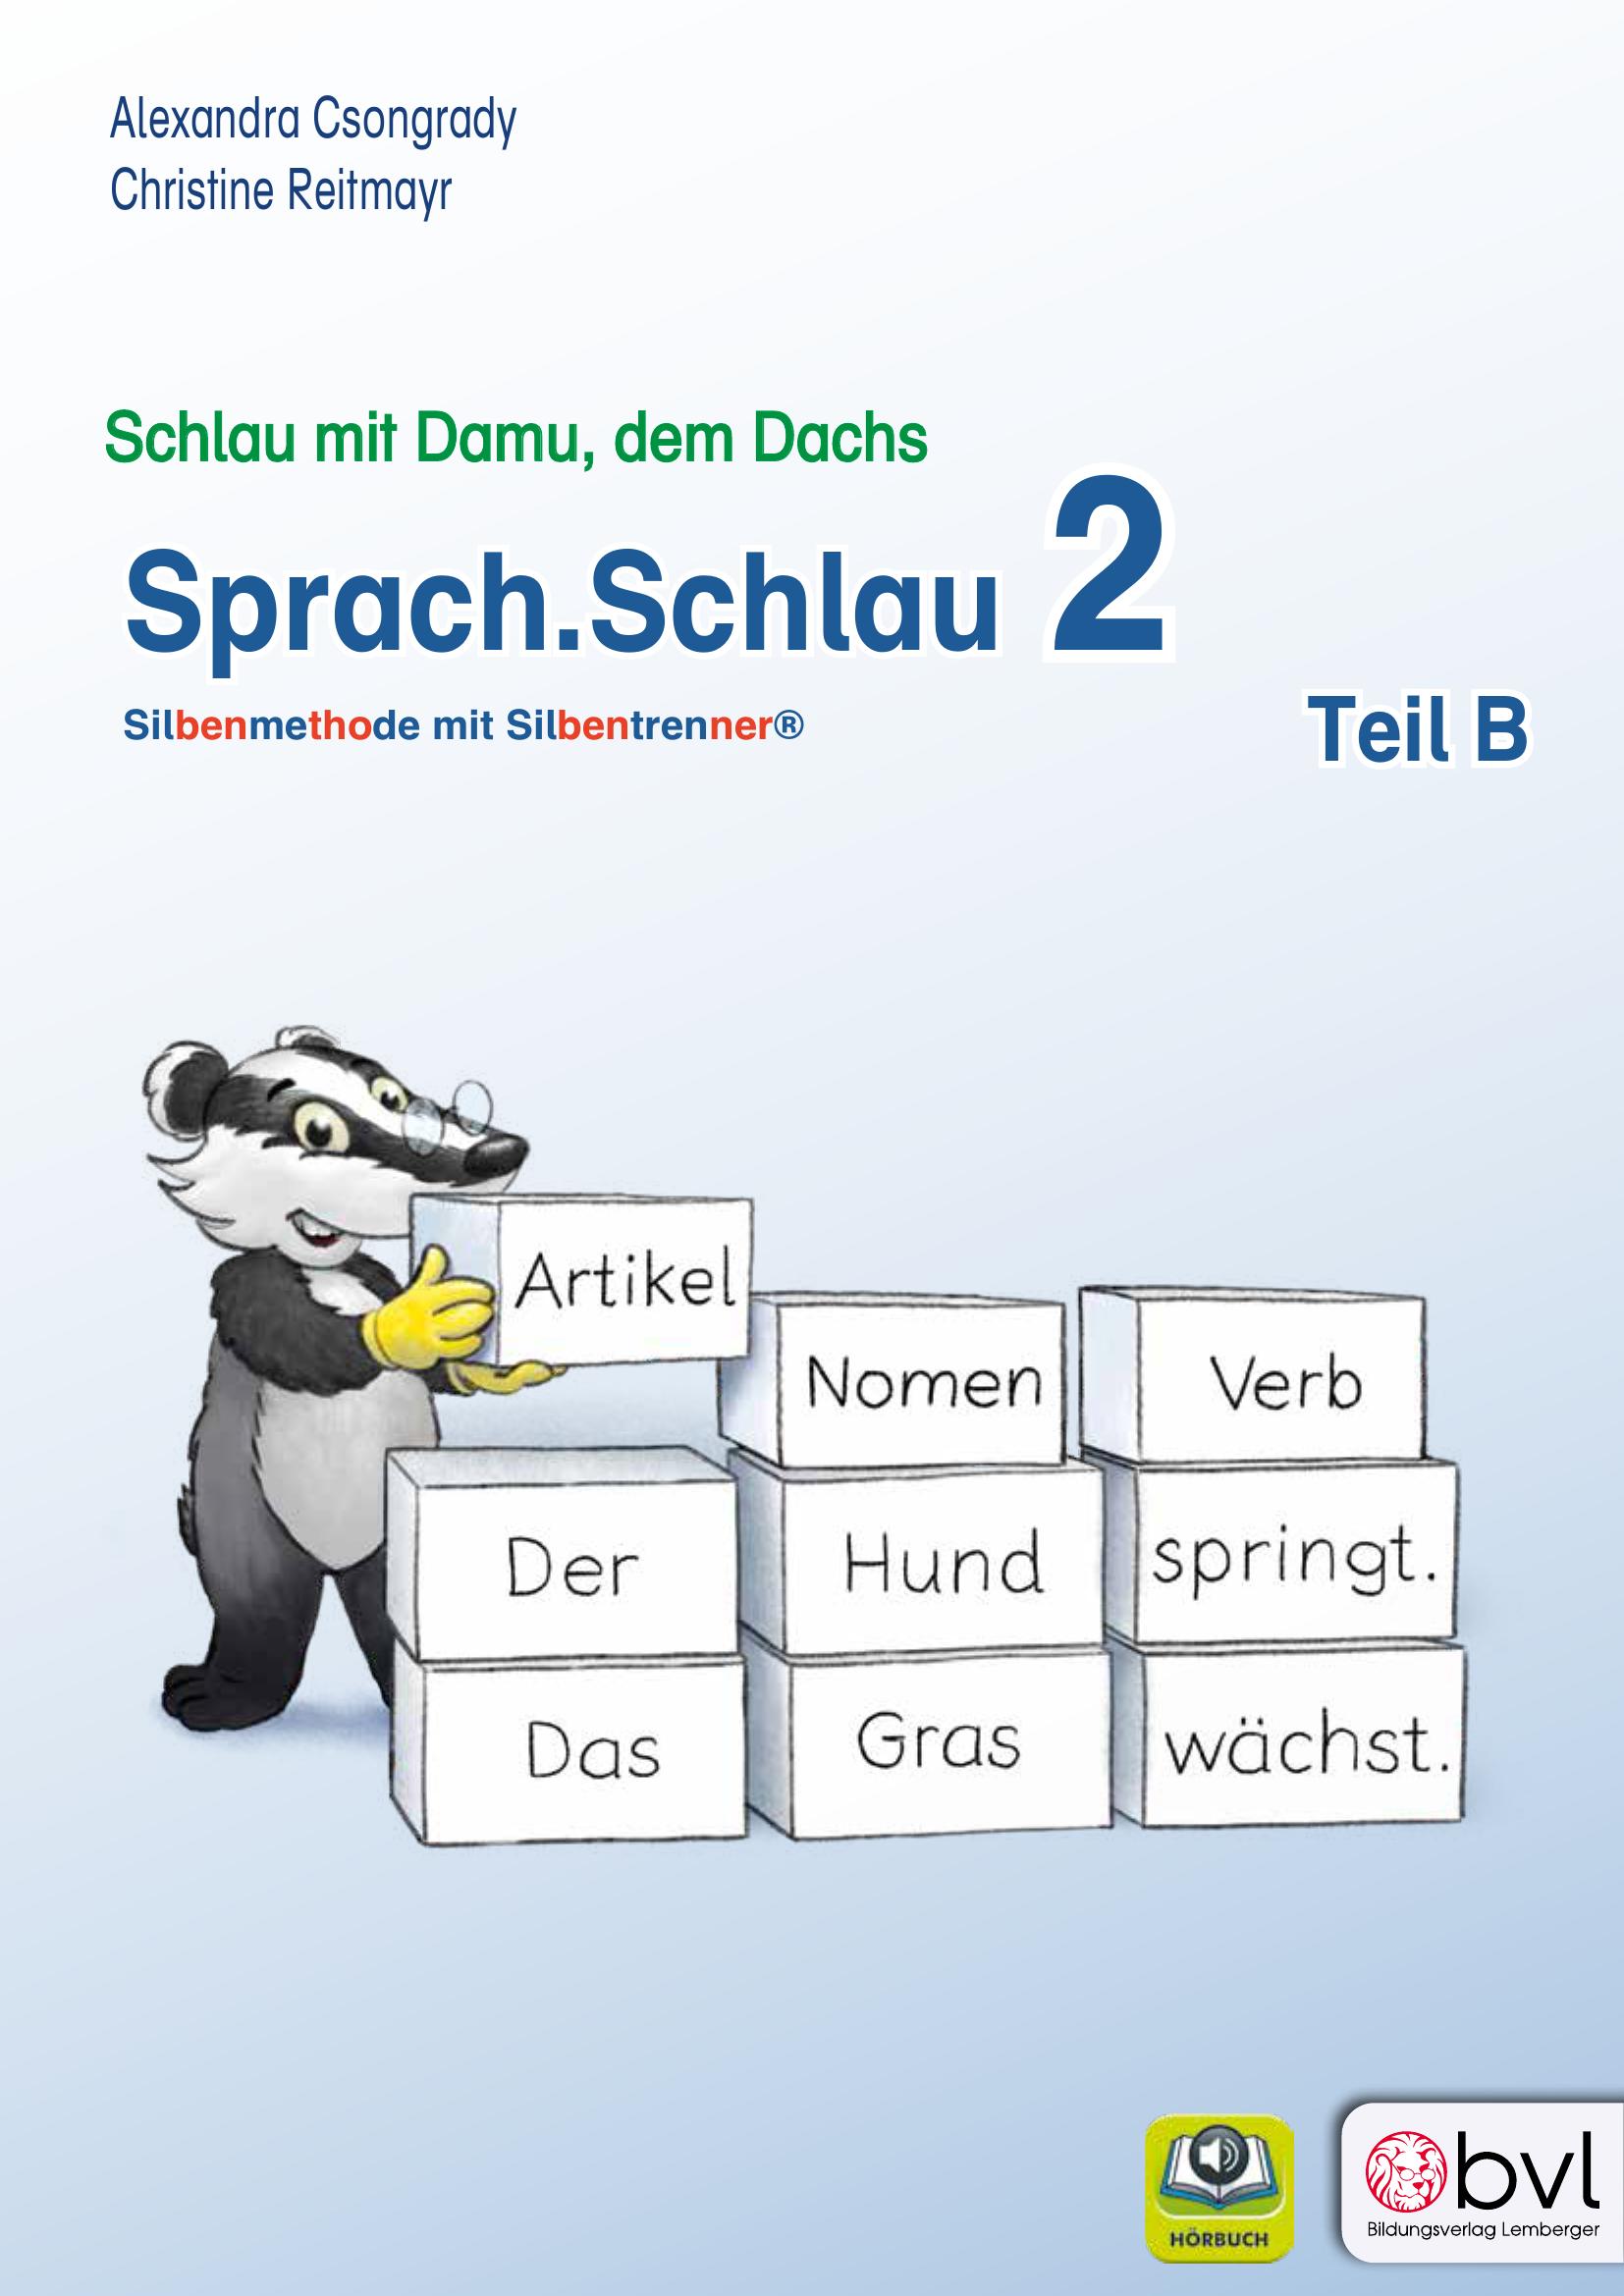 Schlau2_Sprach.Schlau 2 – Teil B_LP’23 v1.1